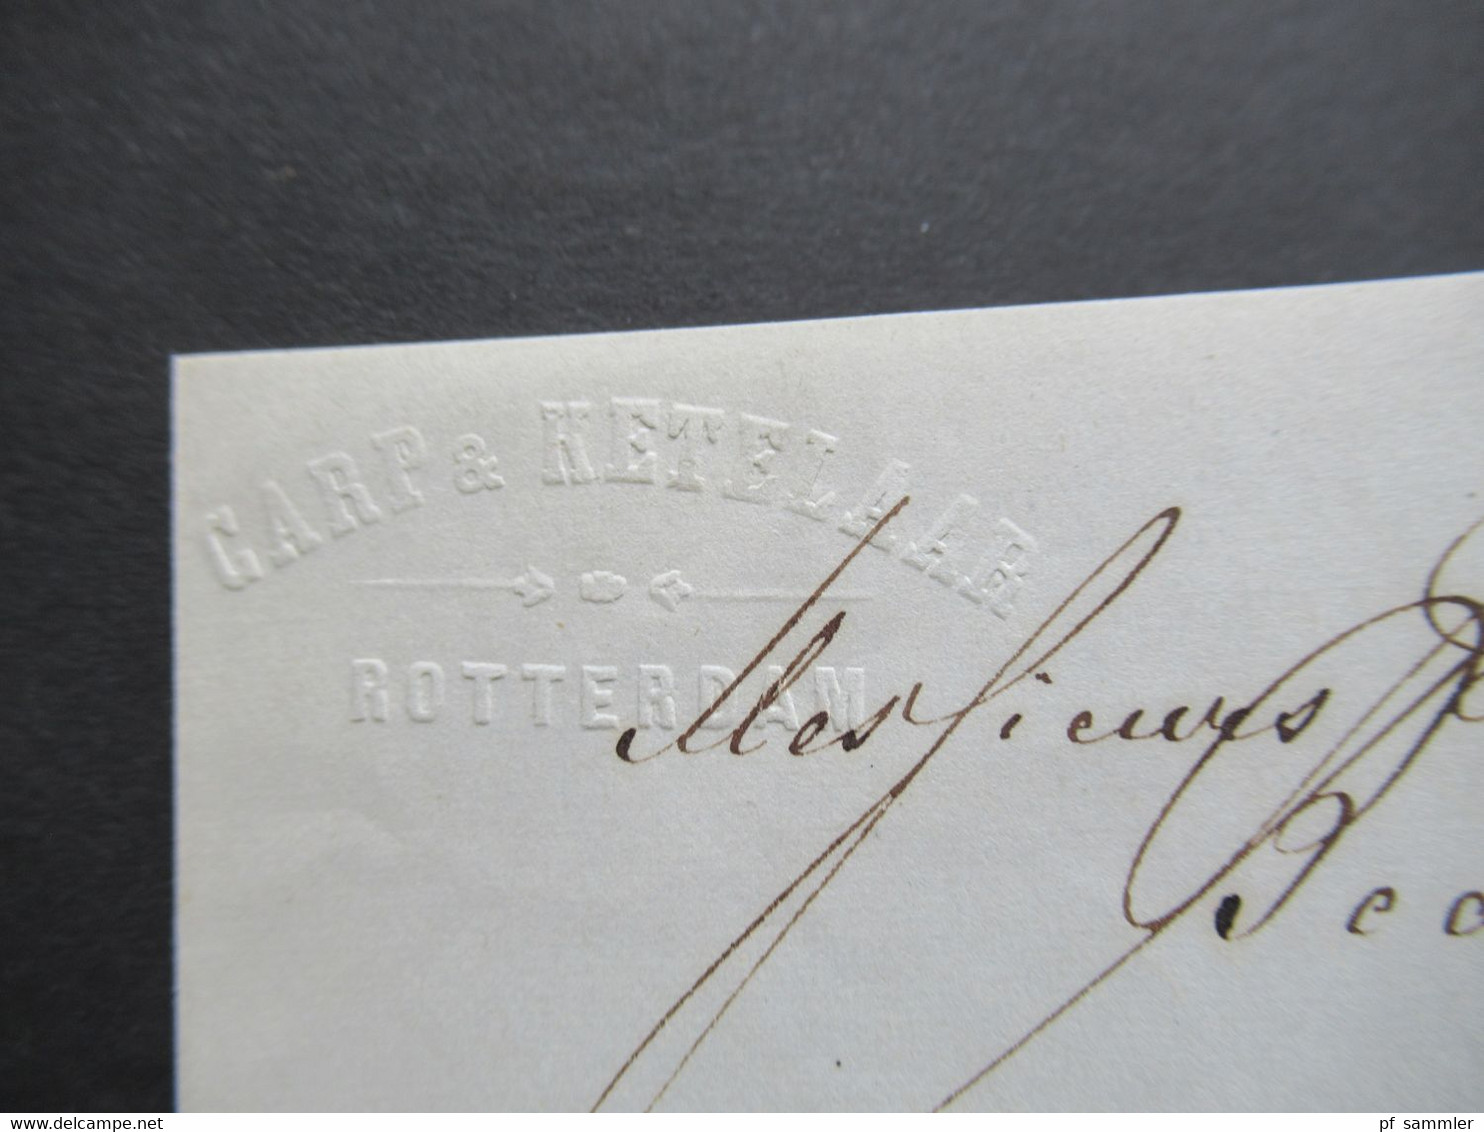 Niederlande 1863 Faltbrief mit Inhalt blauer K2 Pays Bas 2 Valnes Firmenstempel Carp & Ketelaar nach Beaume Cote d'Or